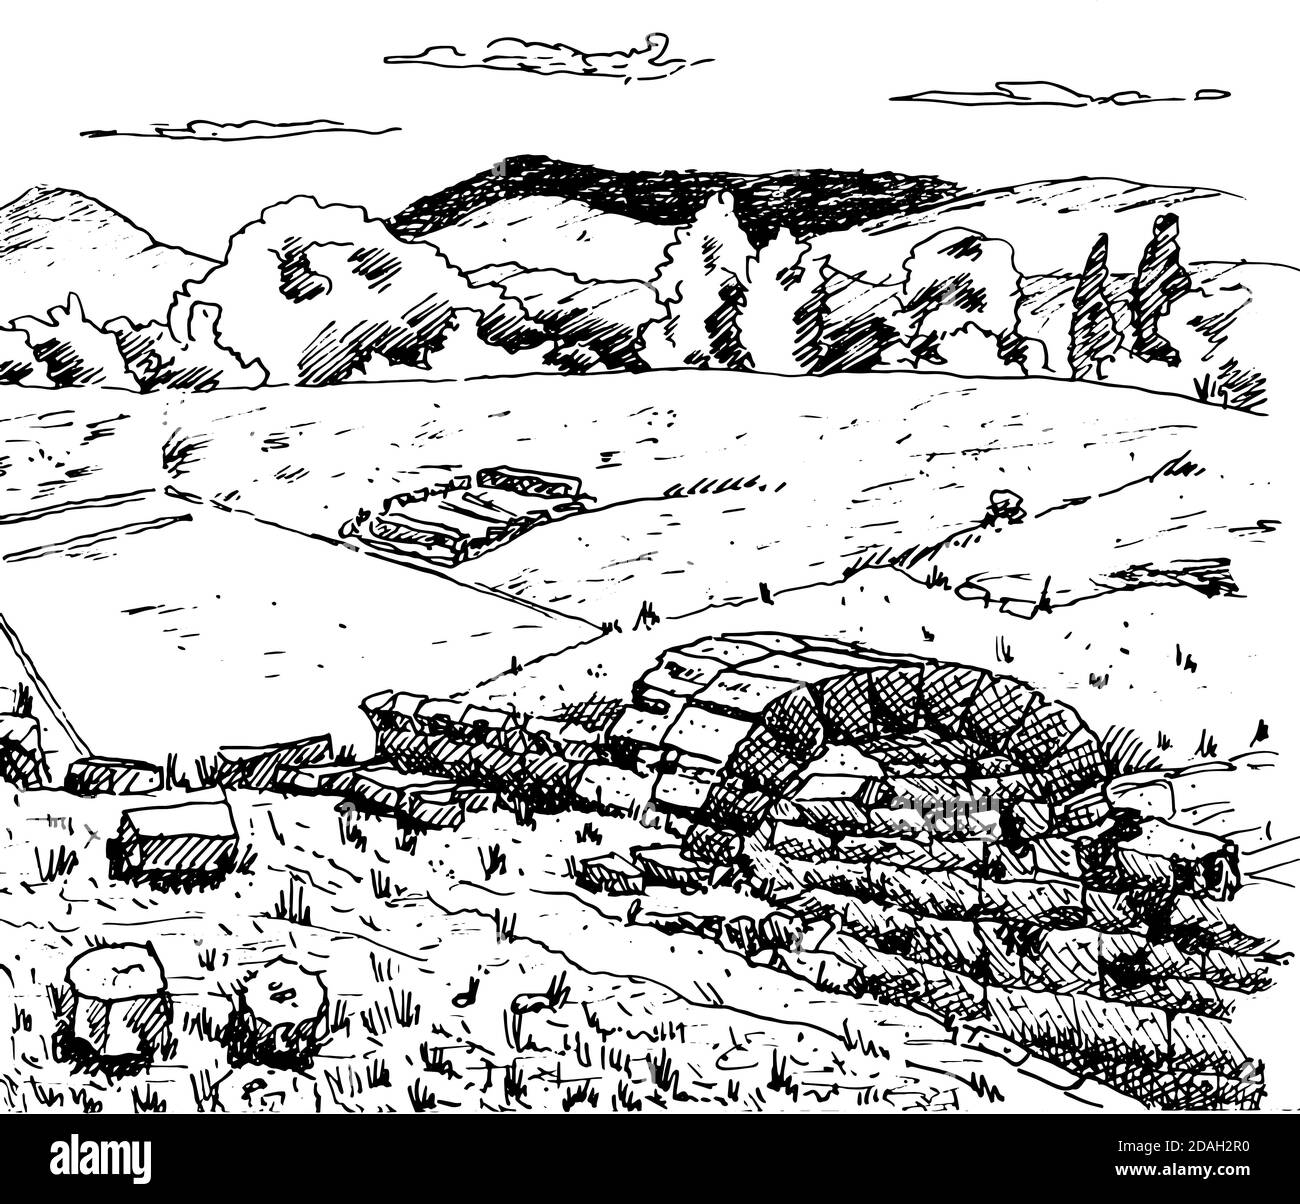 Steinruinen an der archäologischen Stätte von Olympia, wo die antiken Olympischen Spiele stattfanden, auf der griechischen Halbinsel Peloponnes. Tintenzeichnung. Stockfoto